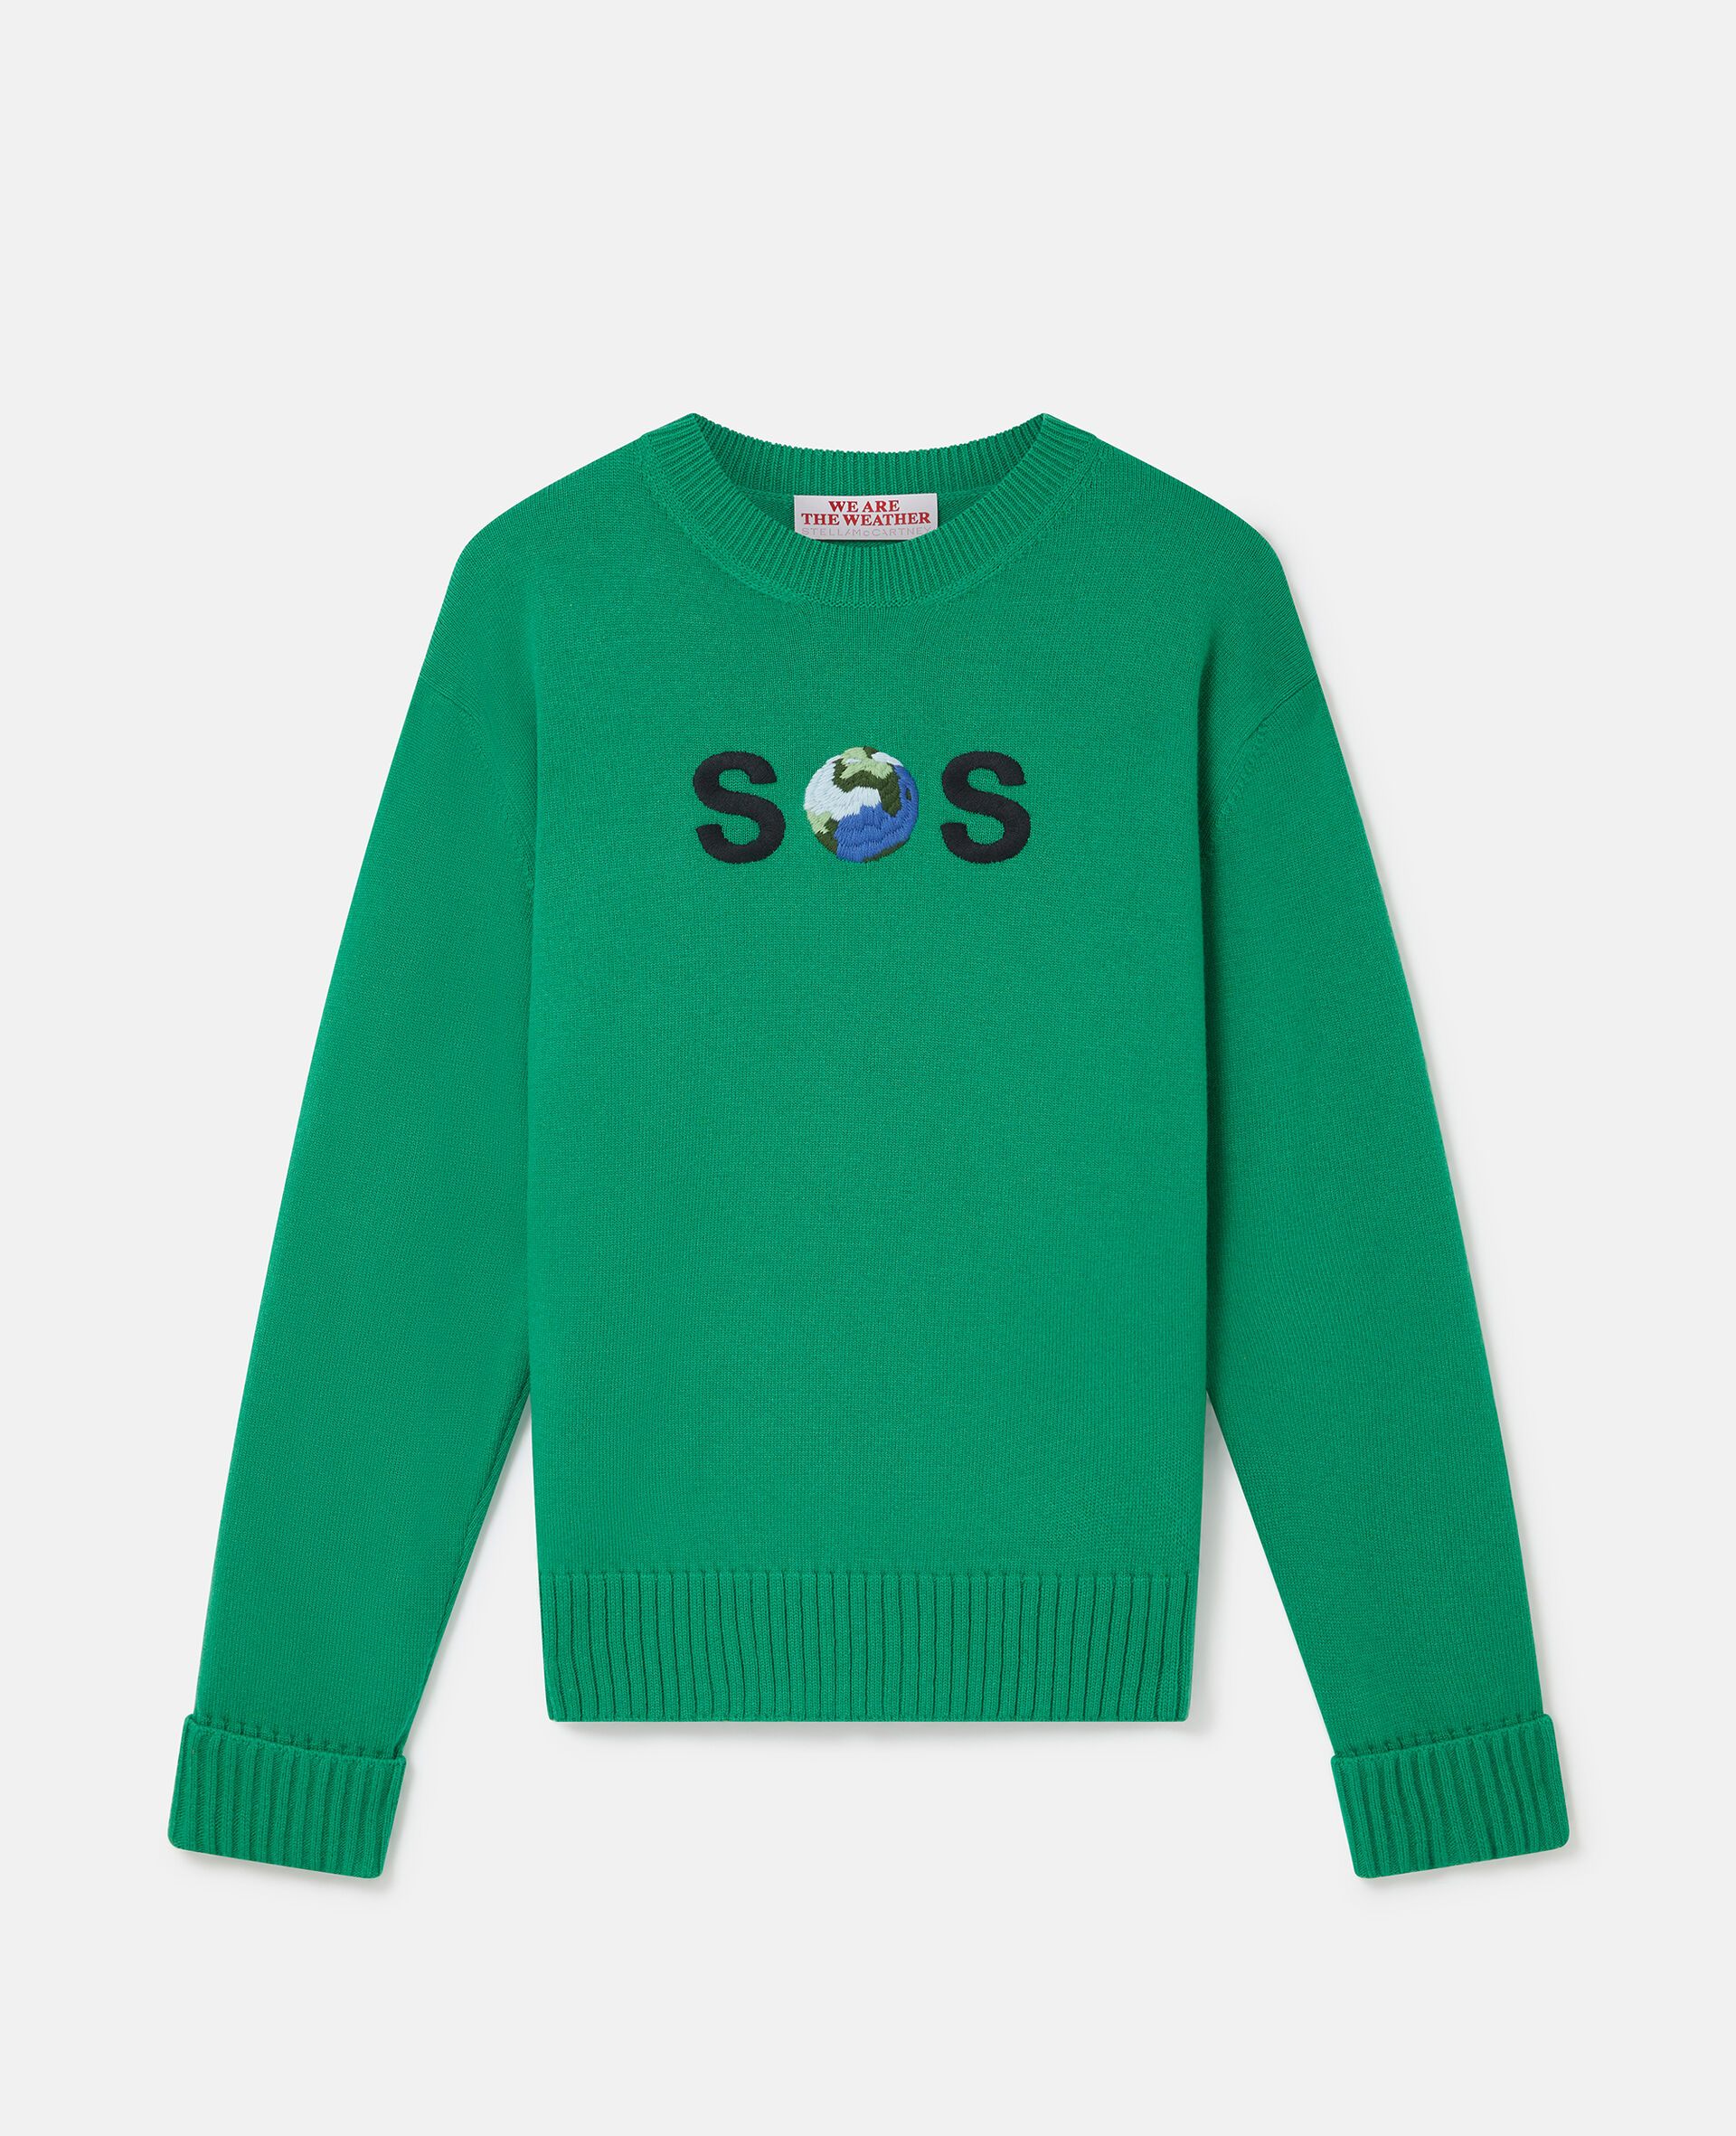 SOS Embroidered Knit Jumper-绿色-medium